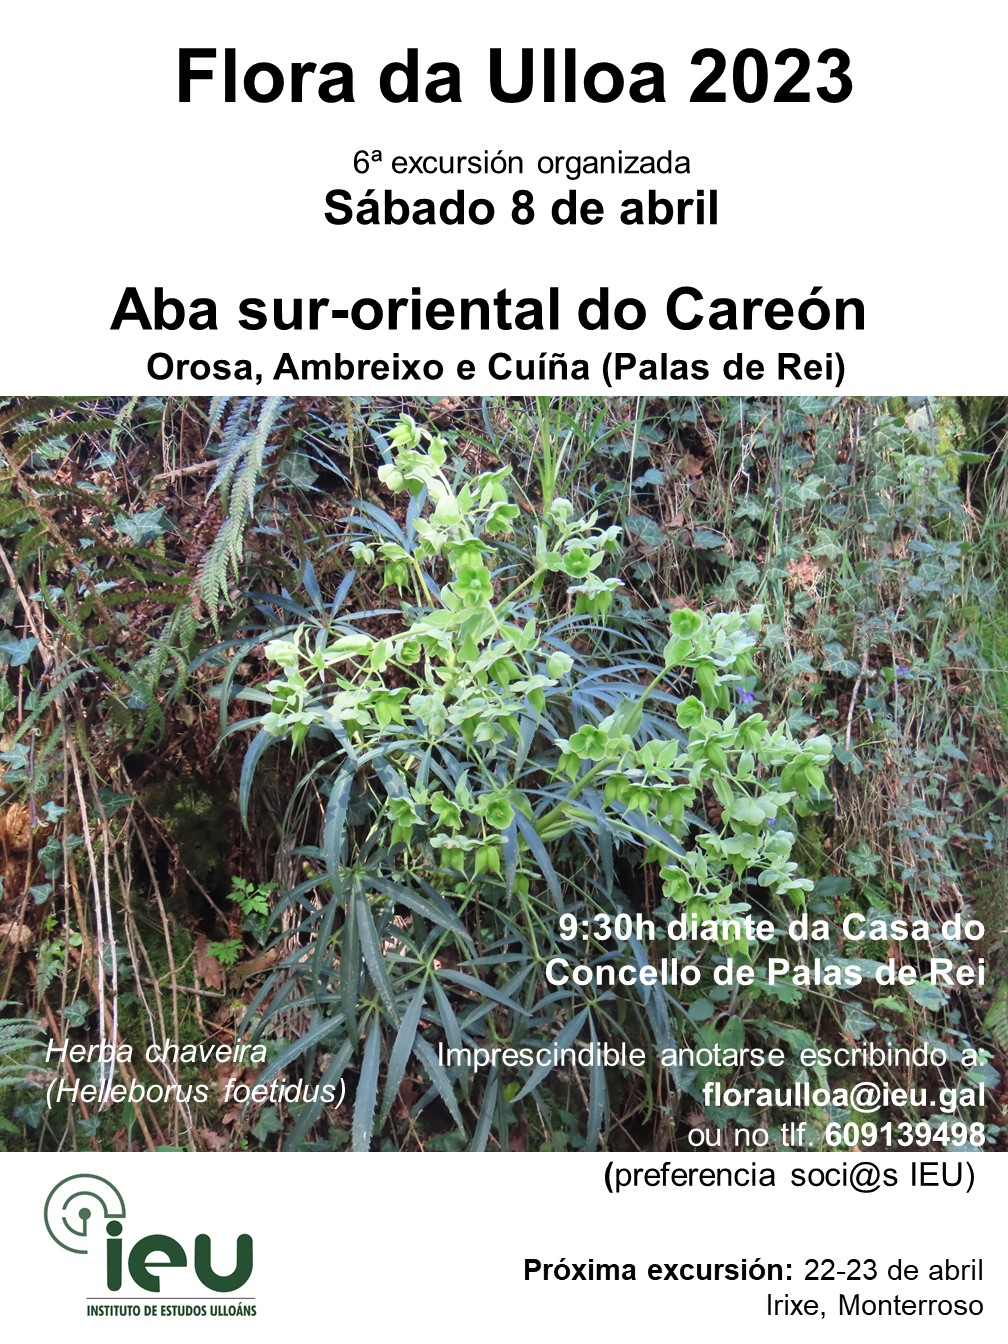 Excursión Flora da Ulloa 6ª 2023, 8-4-2023, Careón Sur-oriental, Instituto de Estudos Ulloáns